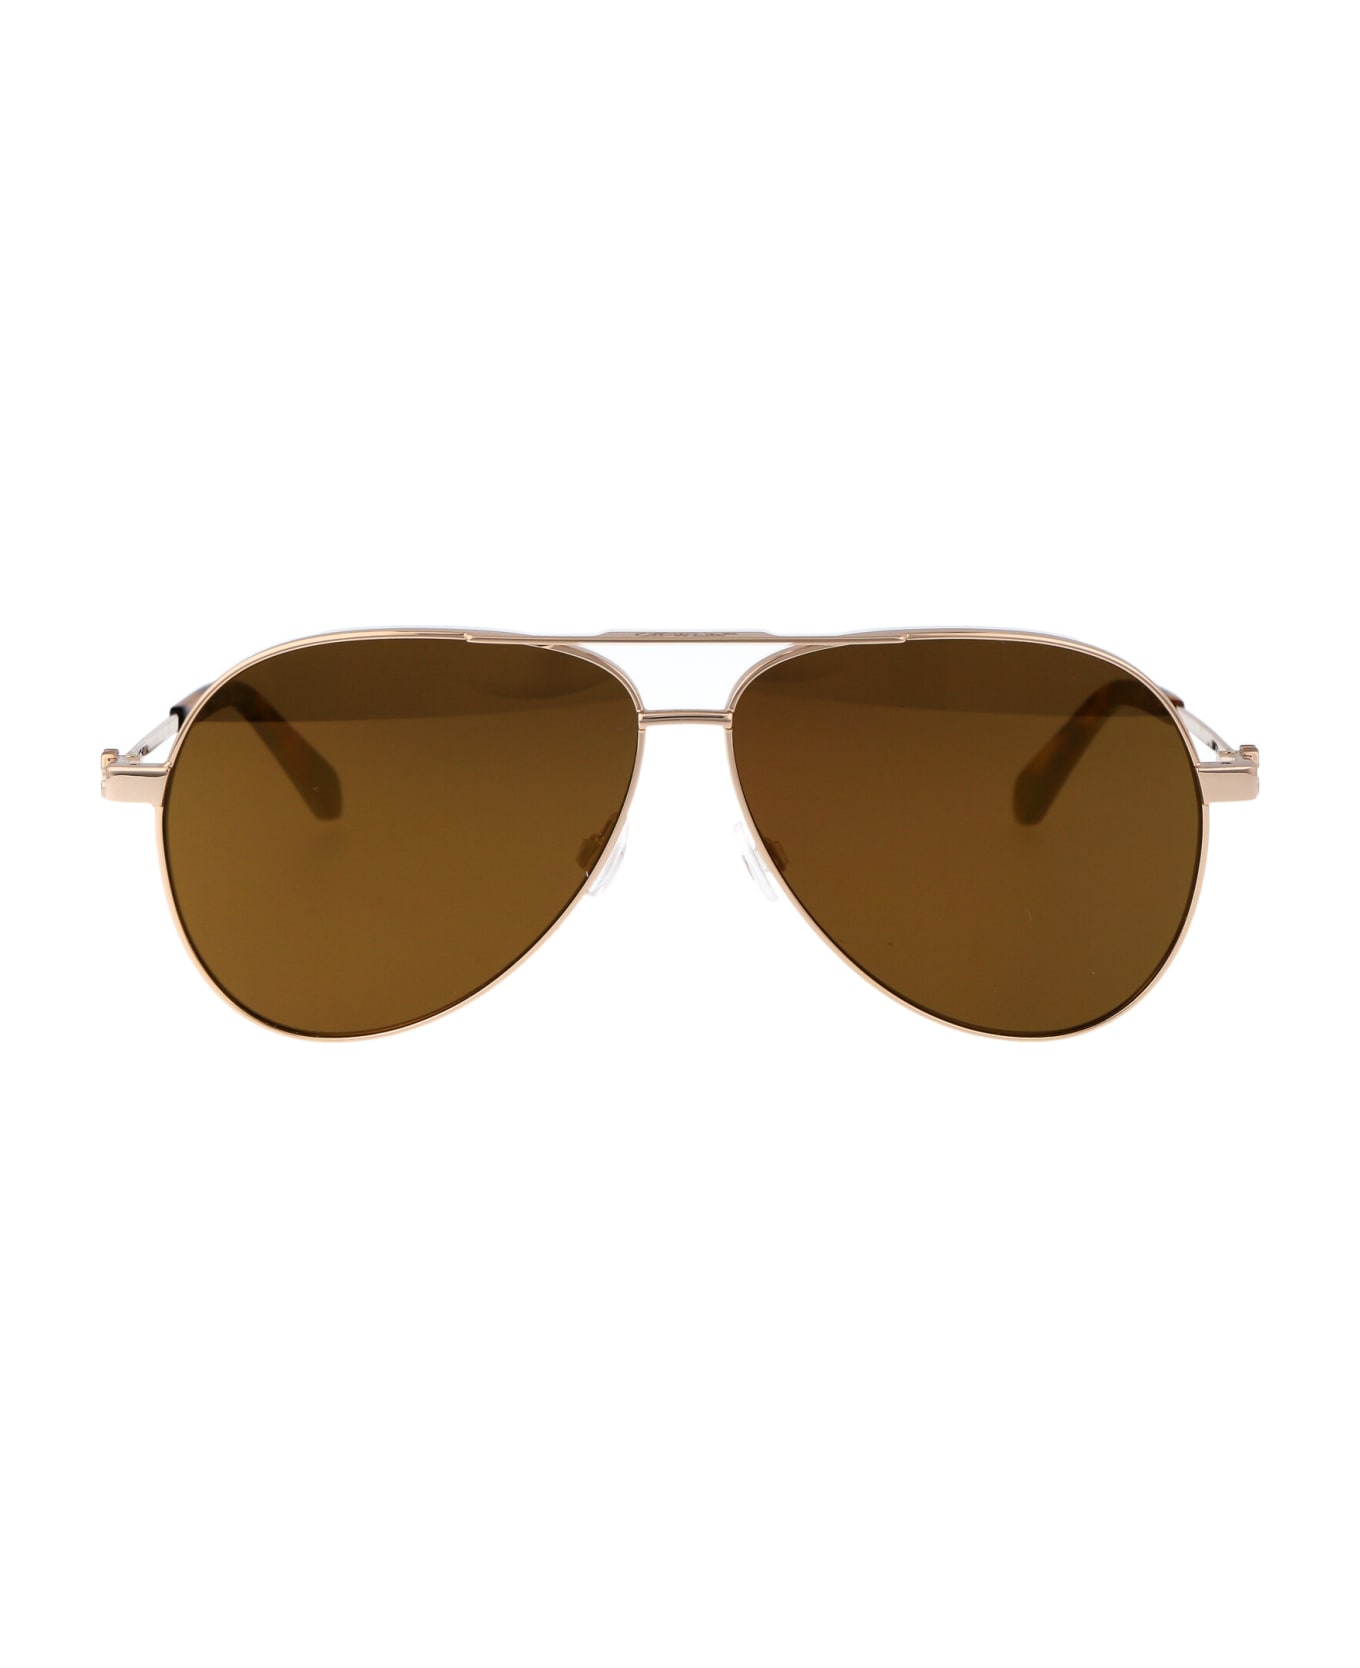 Off-White Ruston L Sunglasses - 7676 GOLD GOLD 